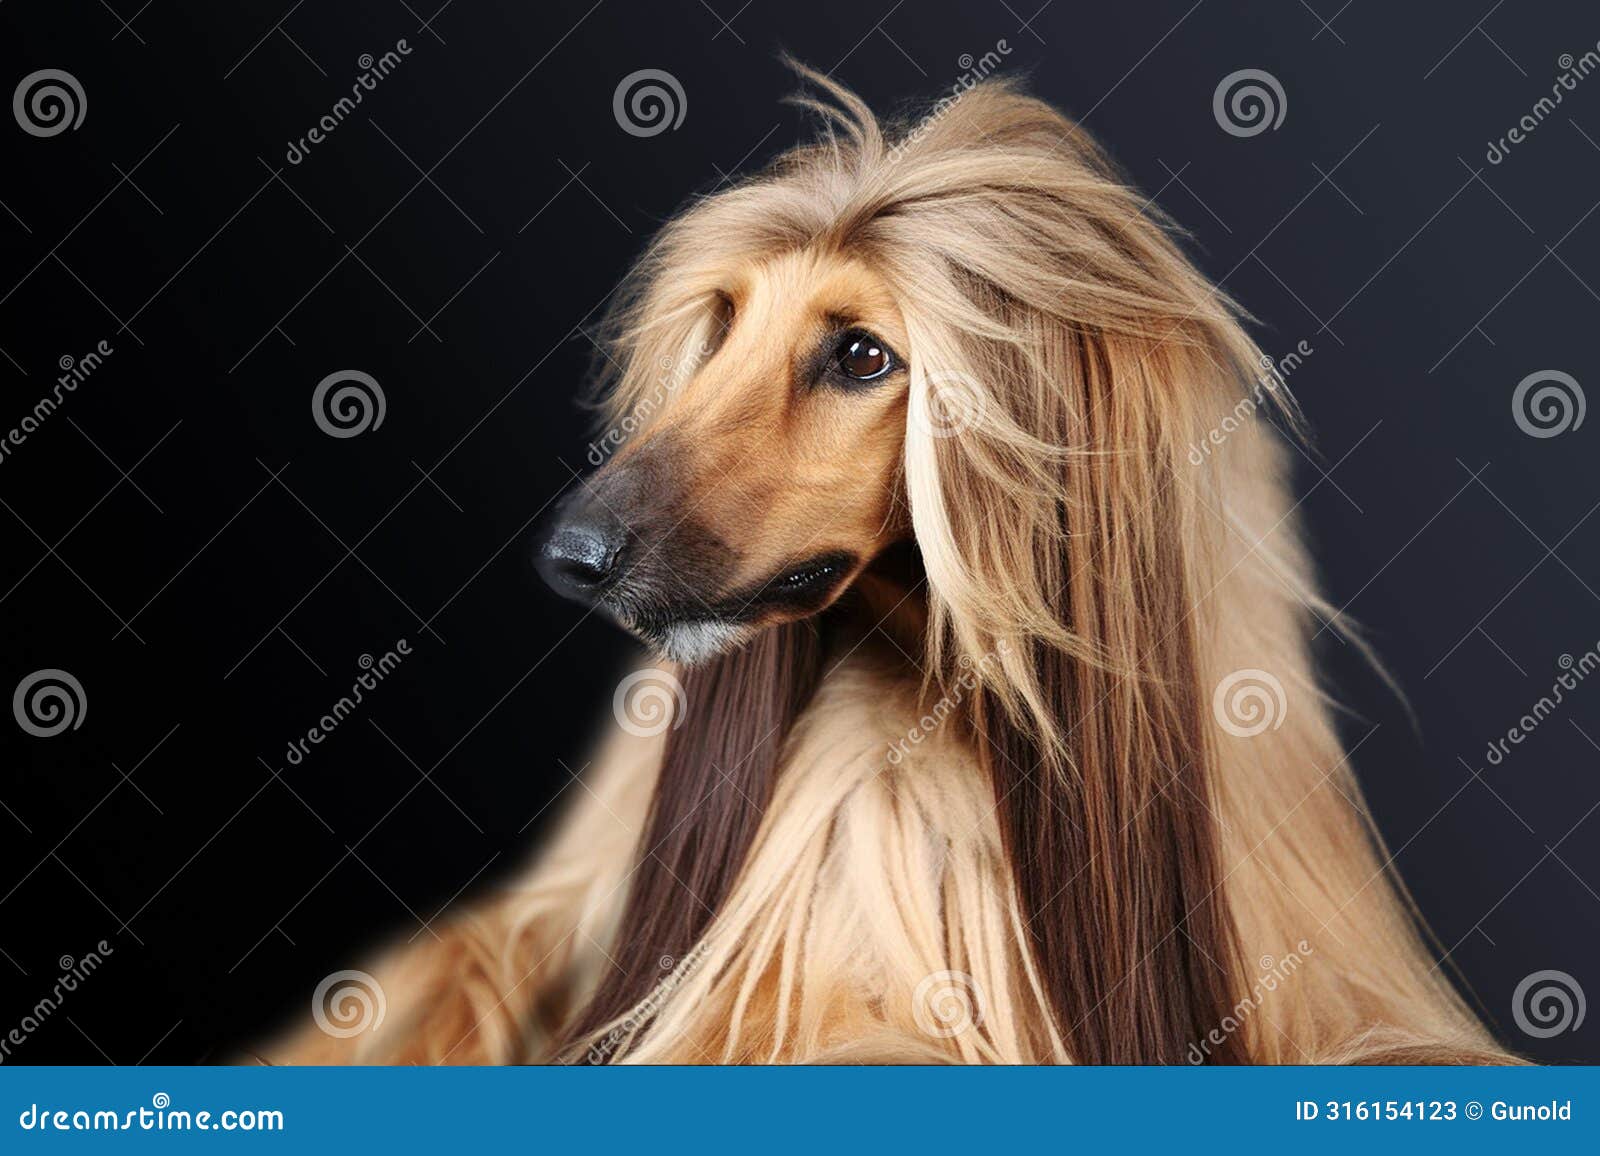 portrait of a wonderful majestic afghan hound